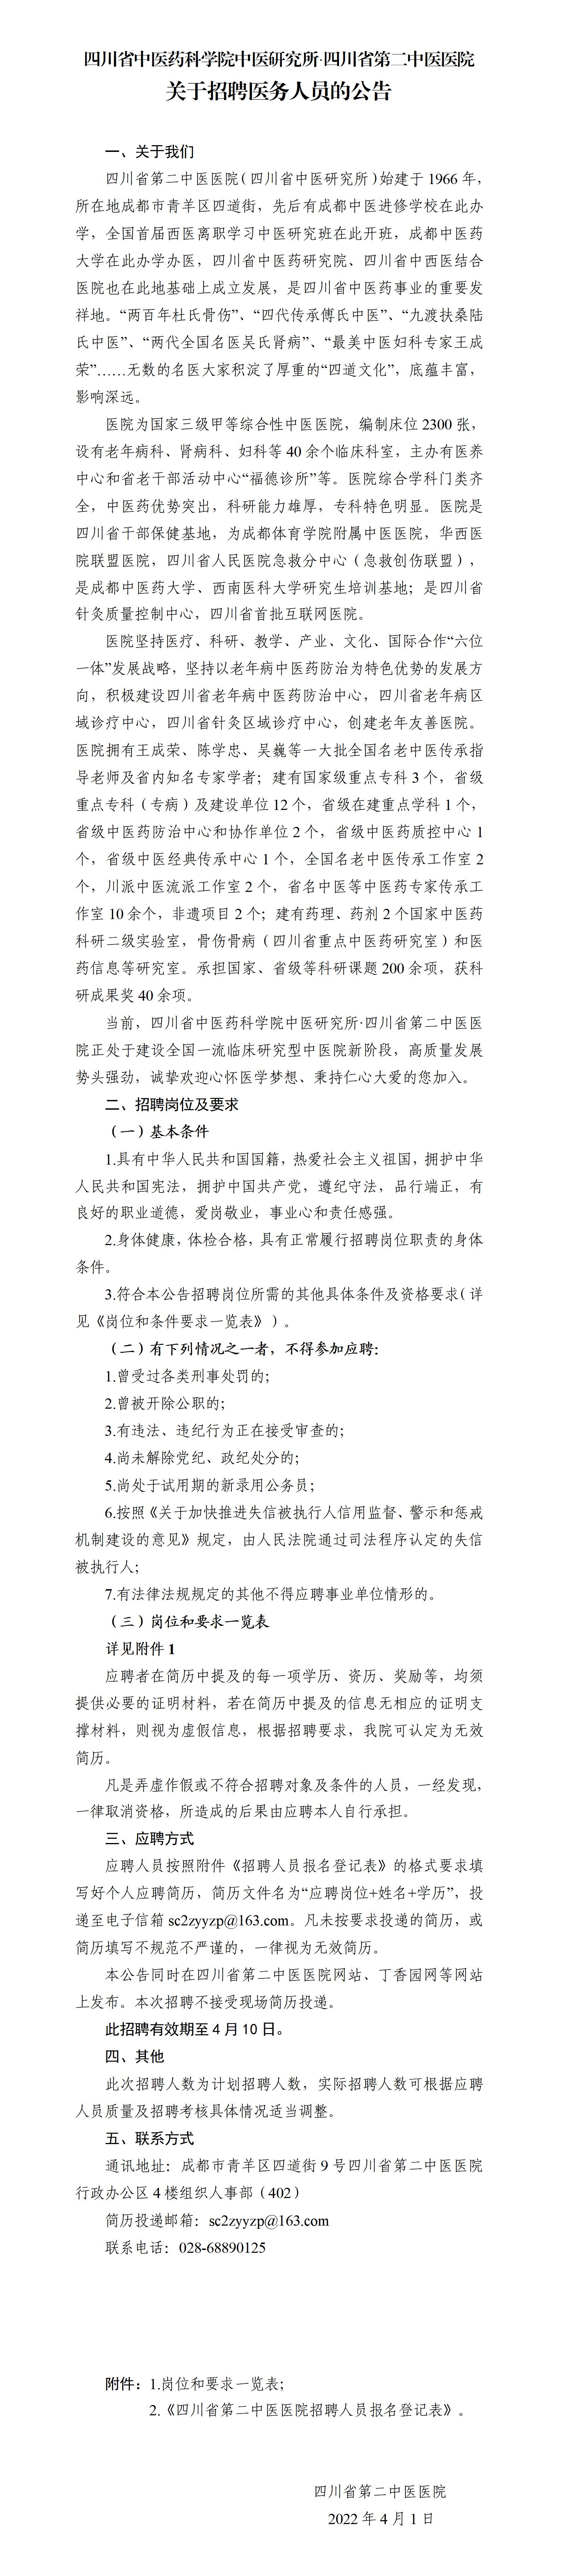 20220401-四川省第二中医医院关于乳腺科、神经外科、眼科、针灸康复科、病理科人员招聘的公告_01.jpg